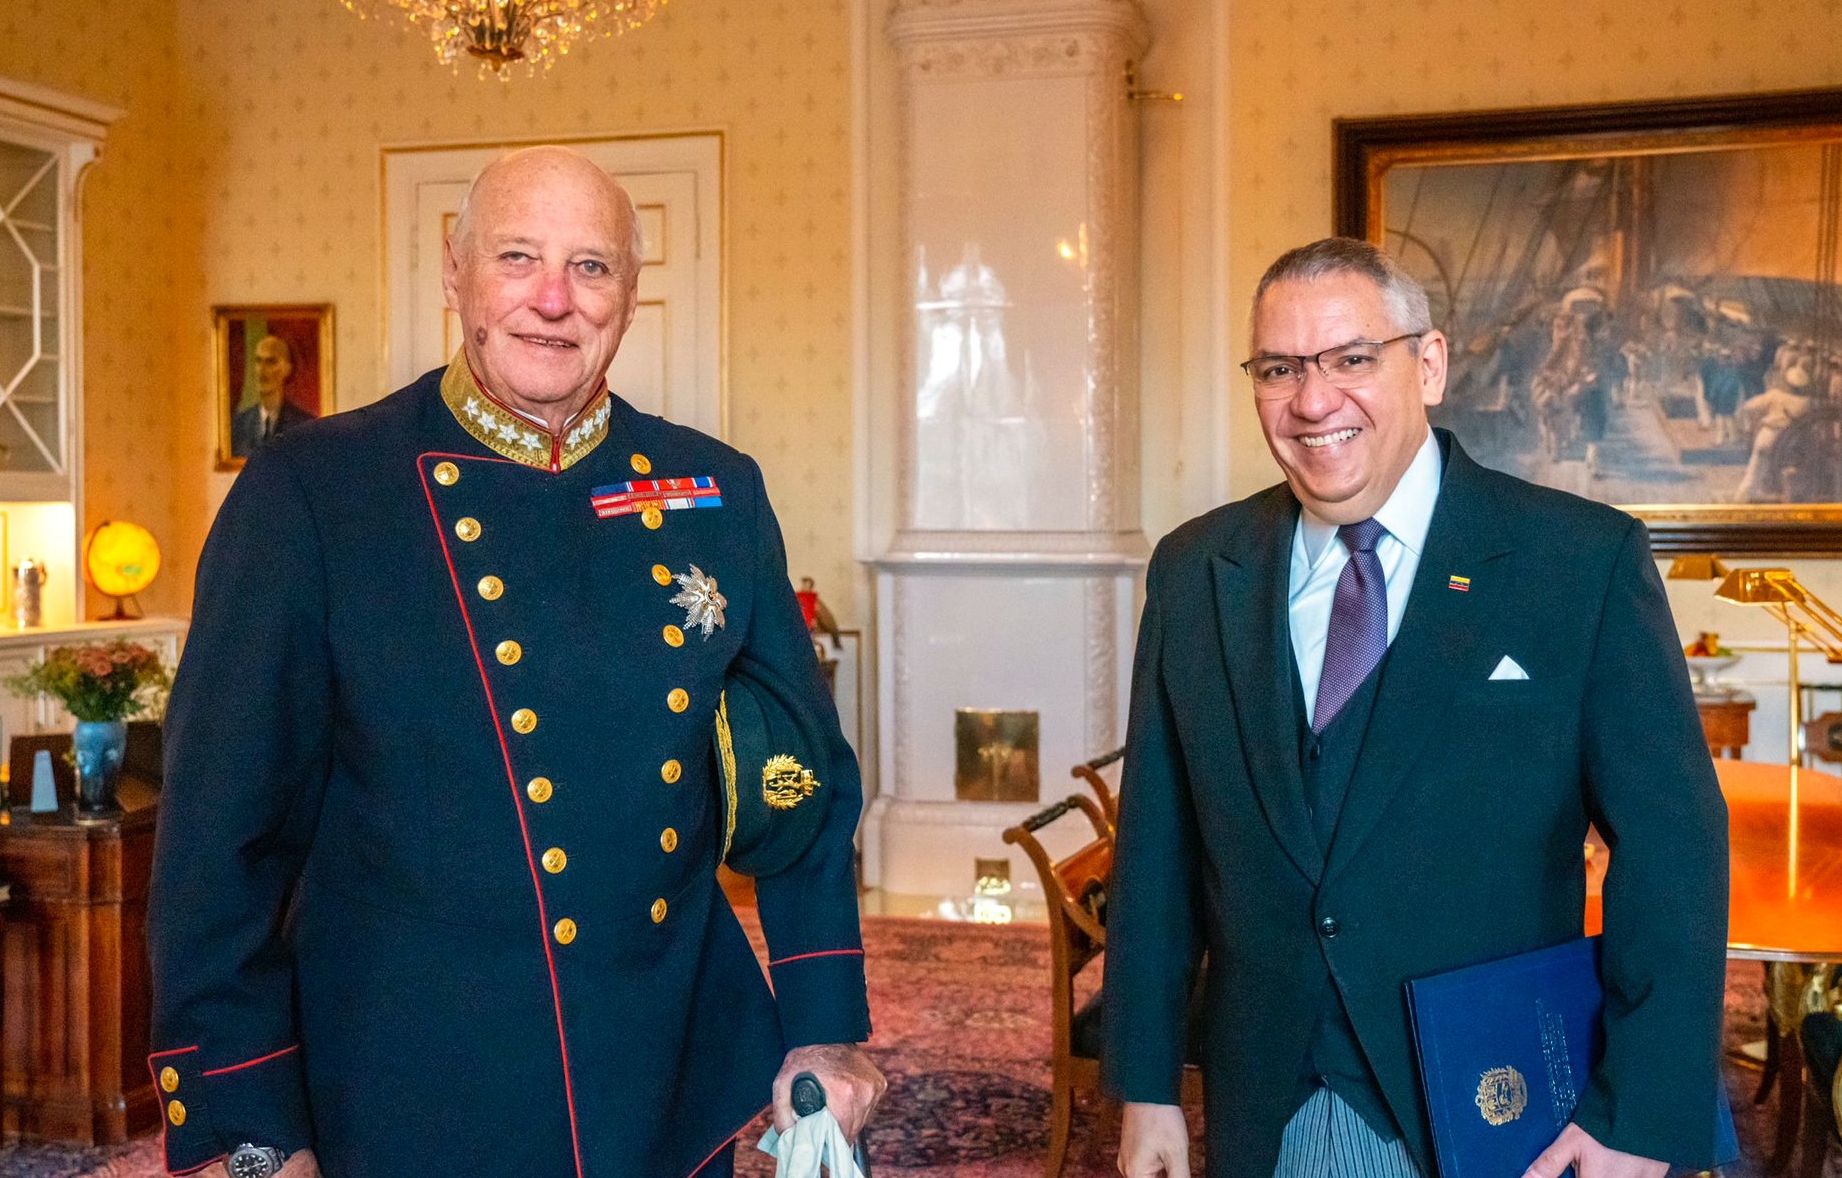 Rey de Noruega recibe credenciales de nuevo embajador de Venezuela